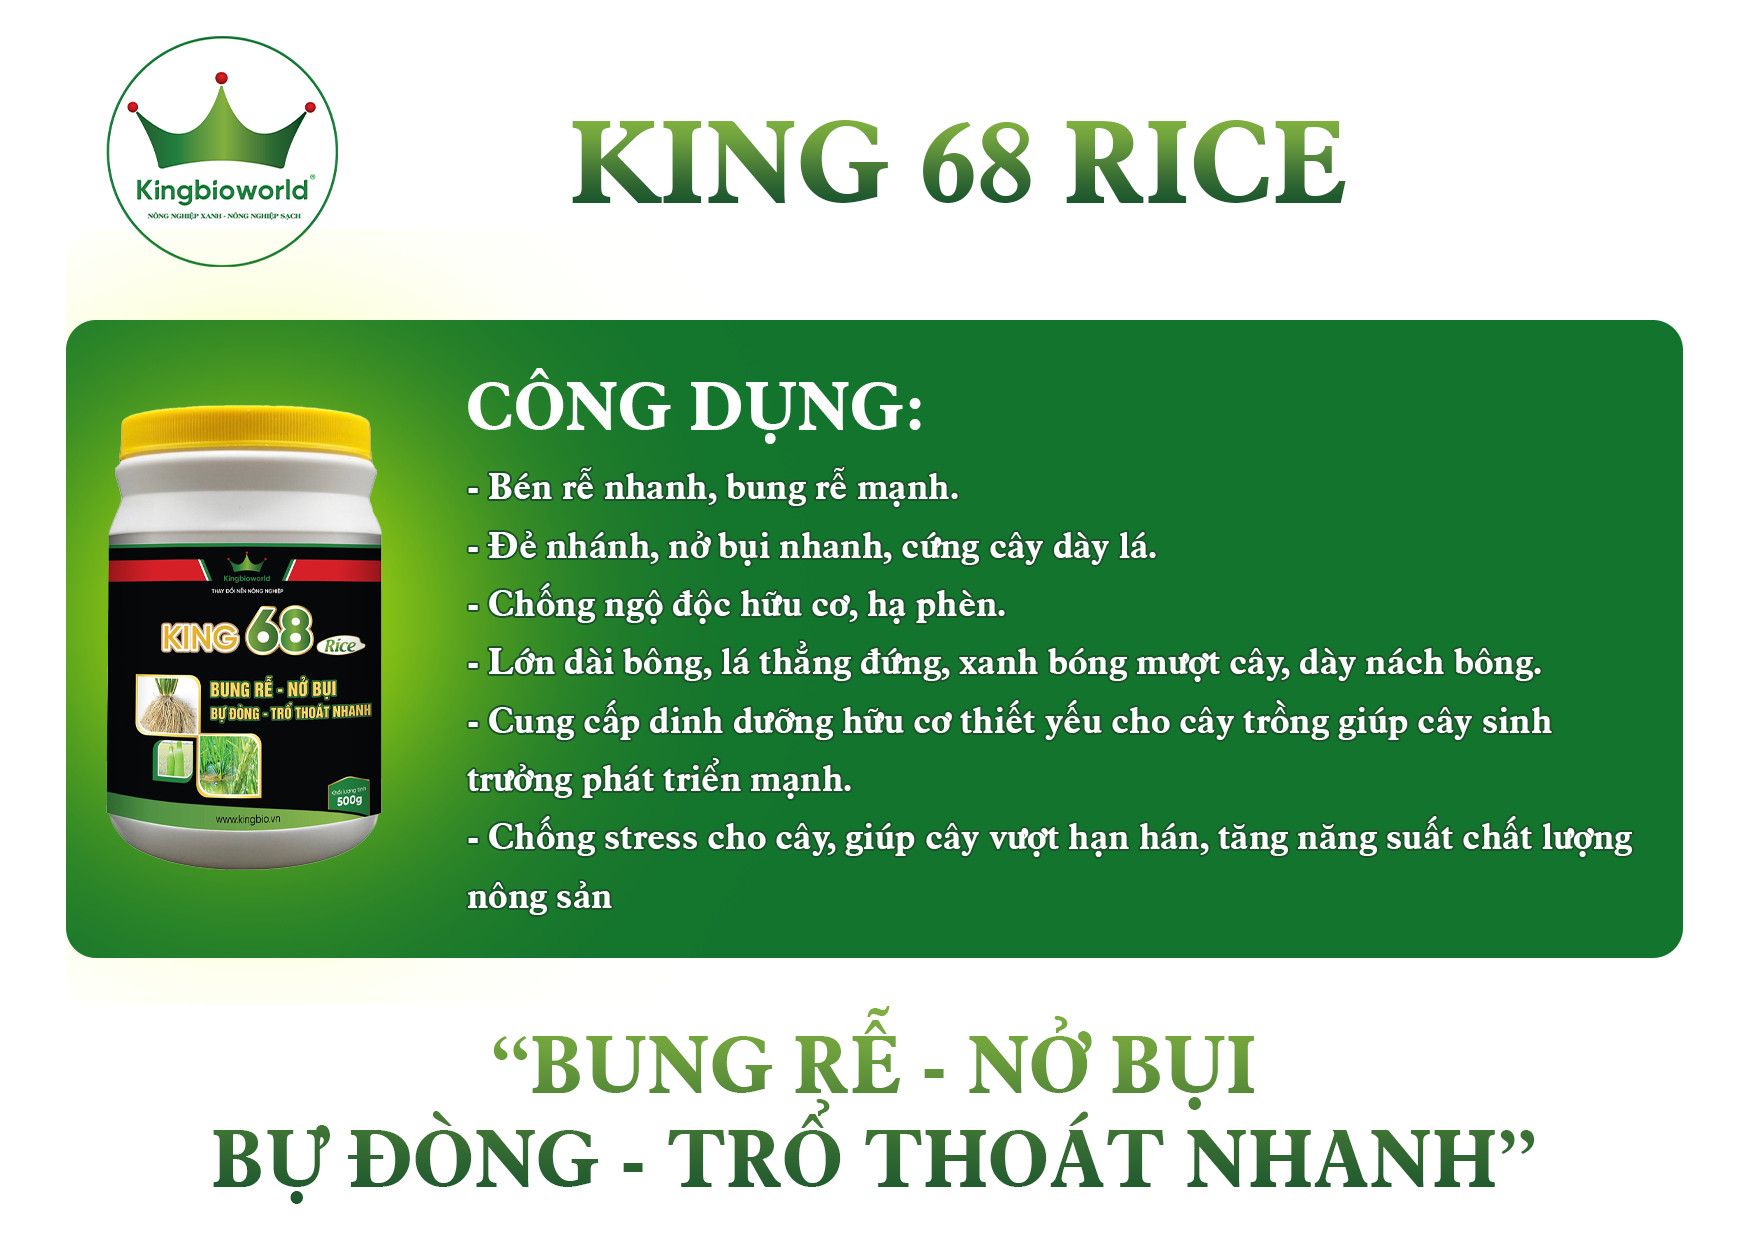 King 68 Rice - Thuốc kích rễ, Nở bụi to, đẻ nhánh nhanh, kích to đòng, bự đòng trổ thoát nhanh